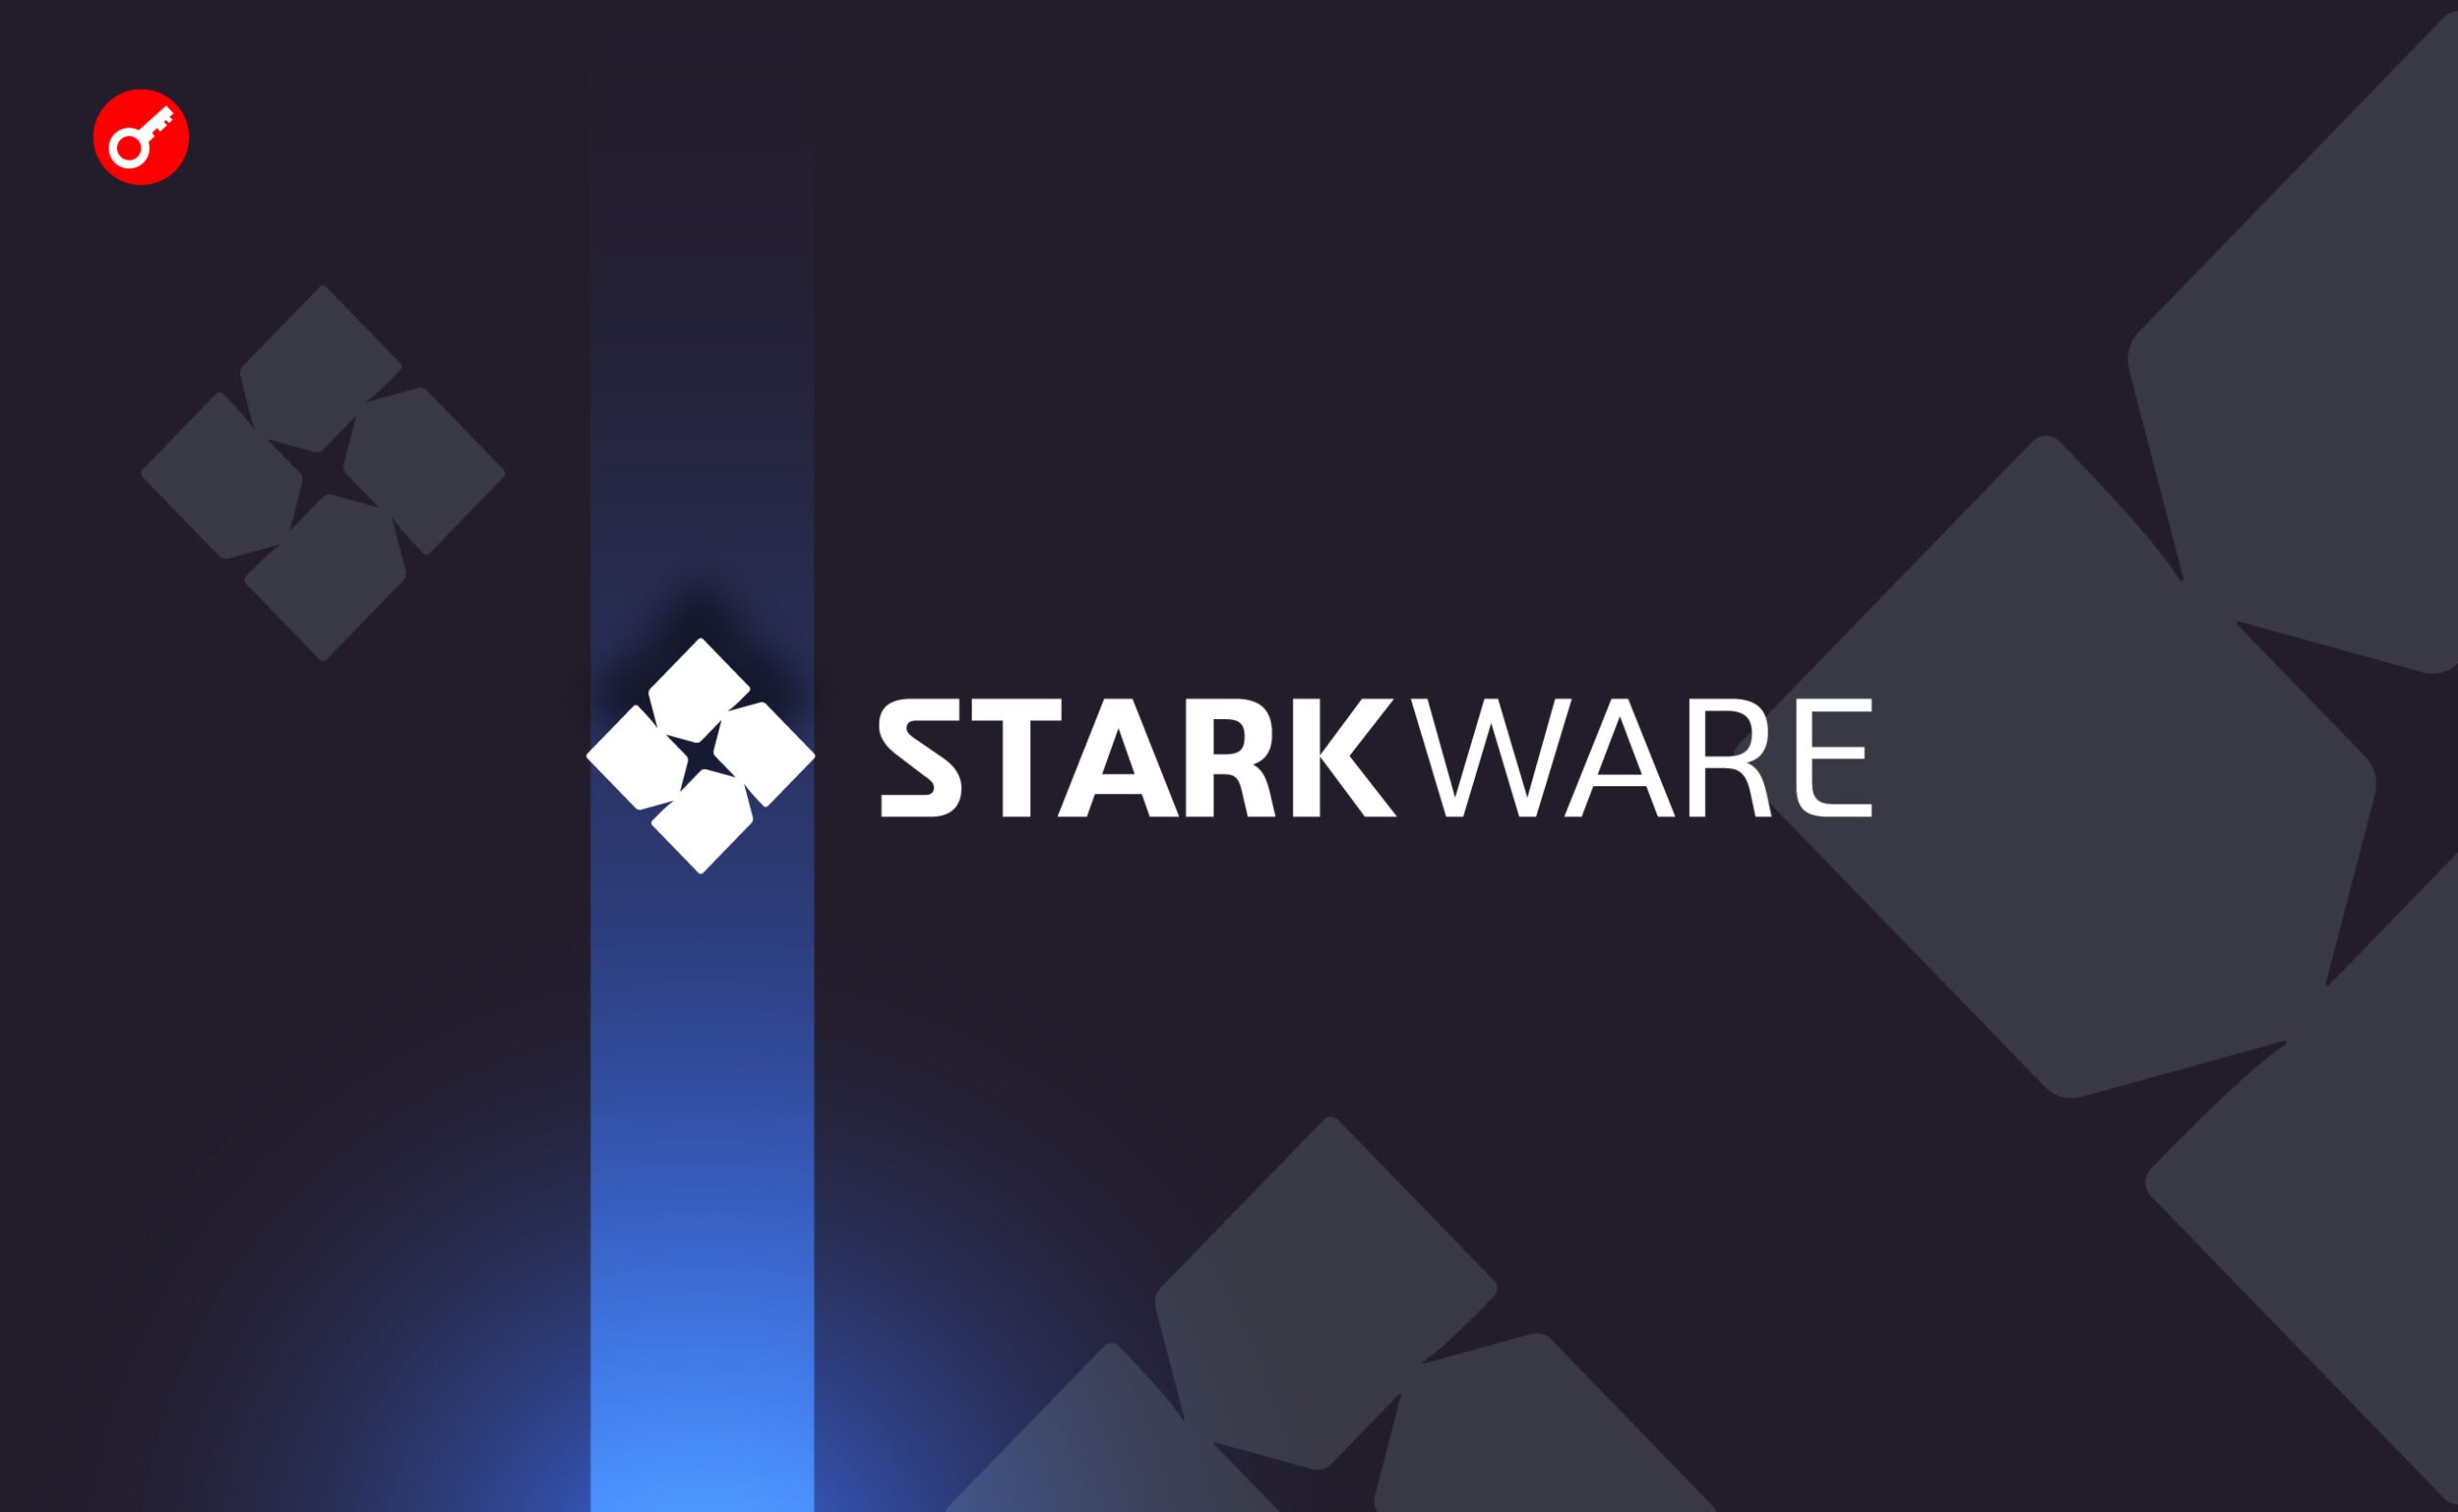 StarkWare вернула доступ к $550 000 после блокировки. Заглавный коллаж новости.